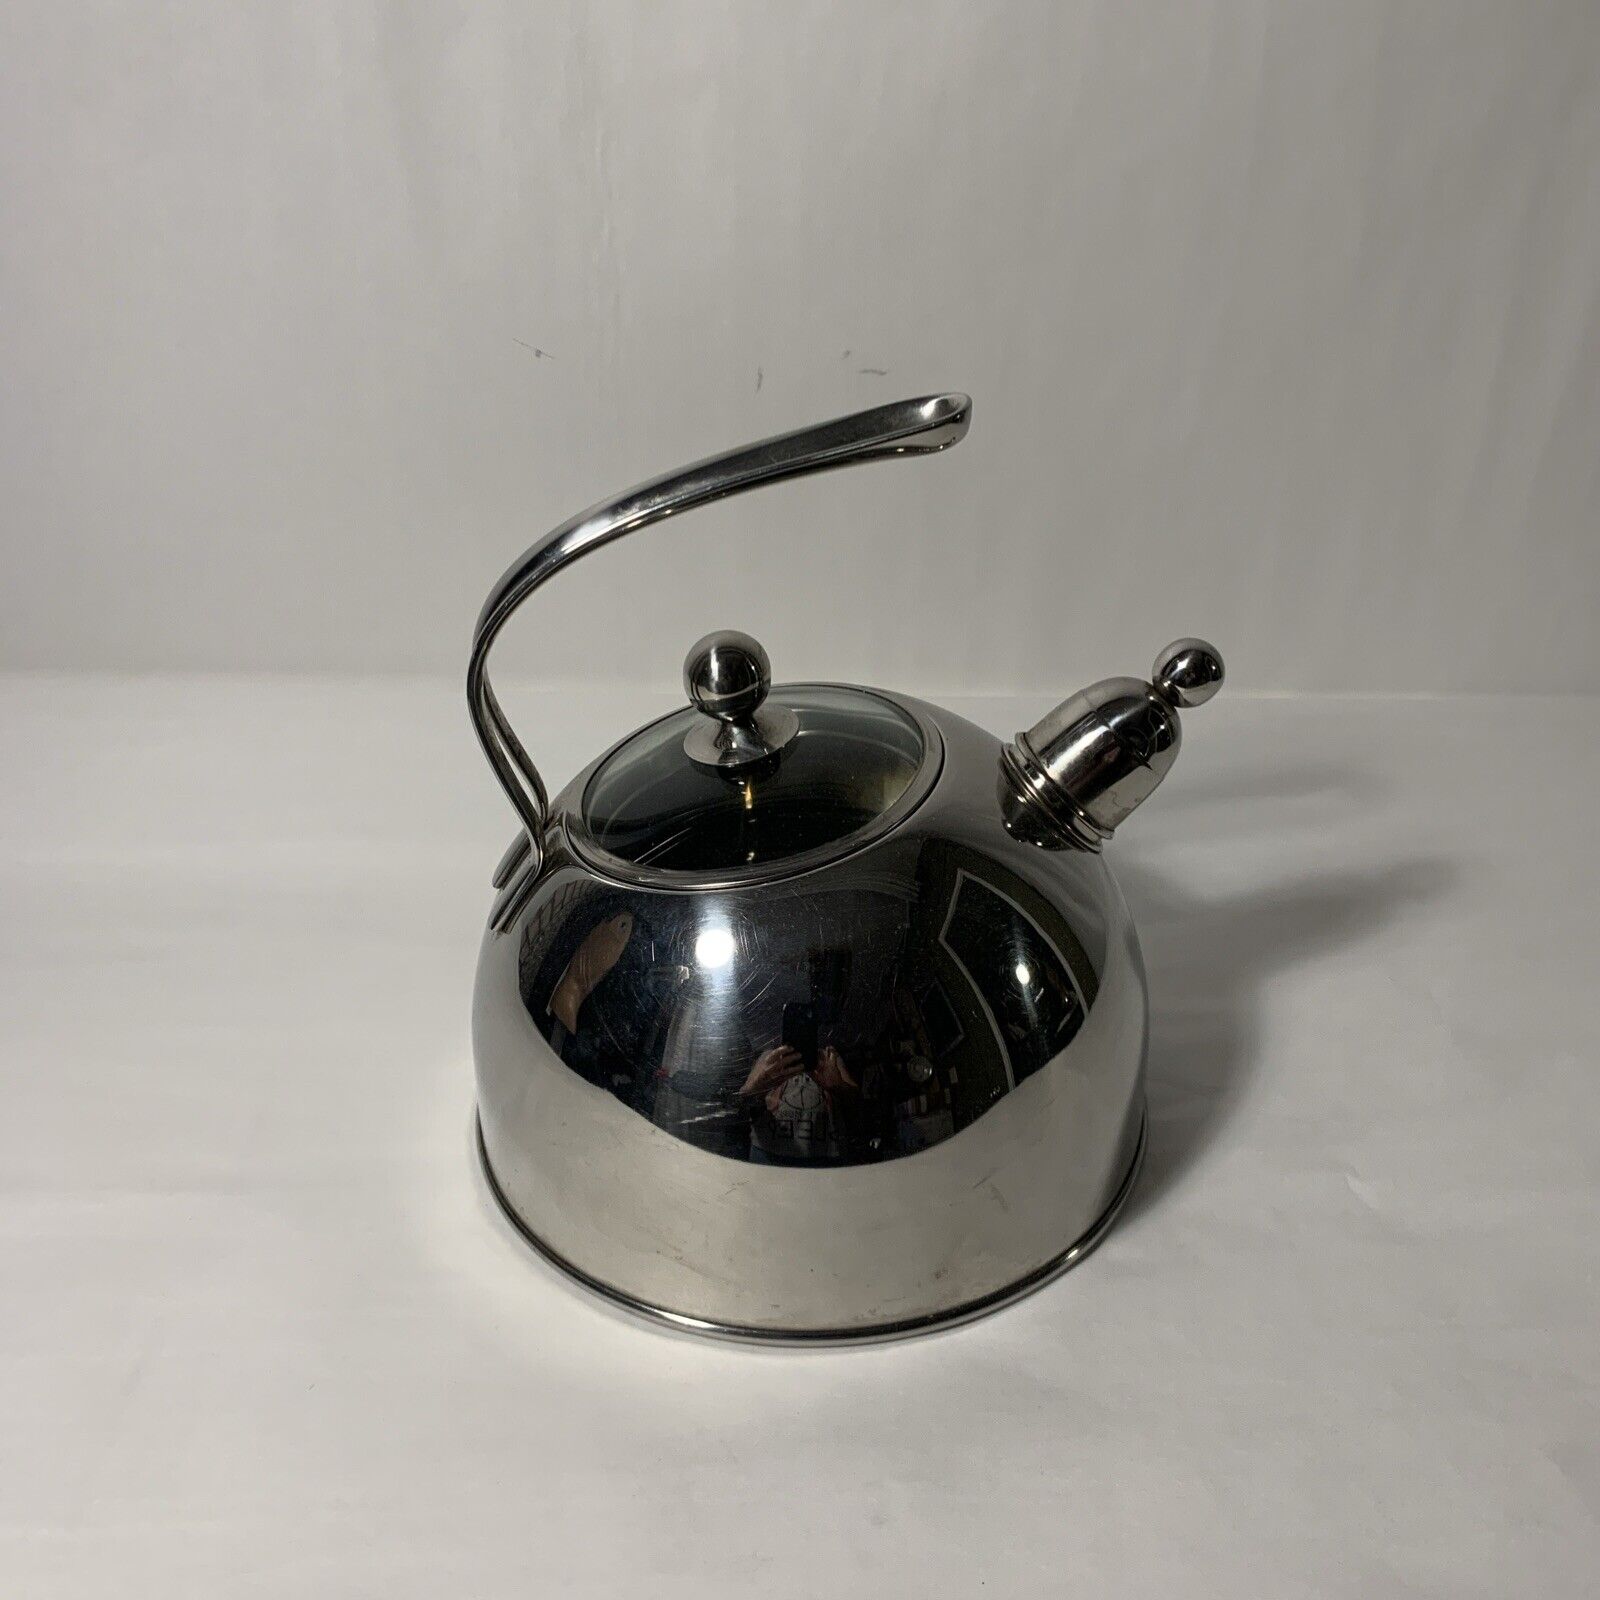 Vintage Lynn's Edelstahl Rostfrei 18-10 Stainless Steel Teapot